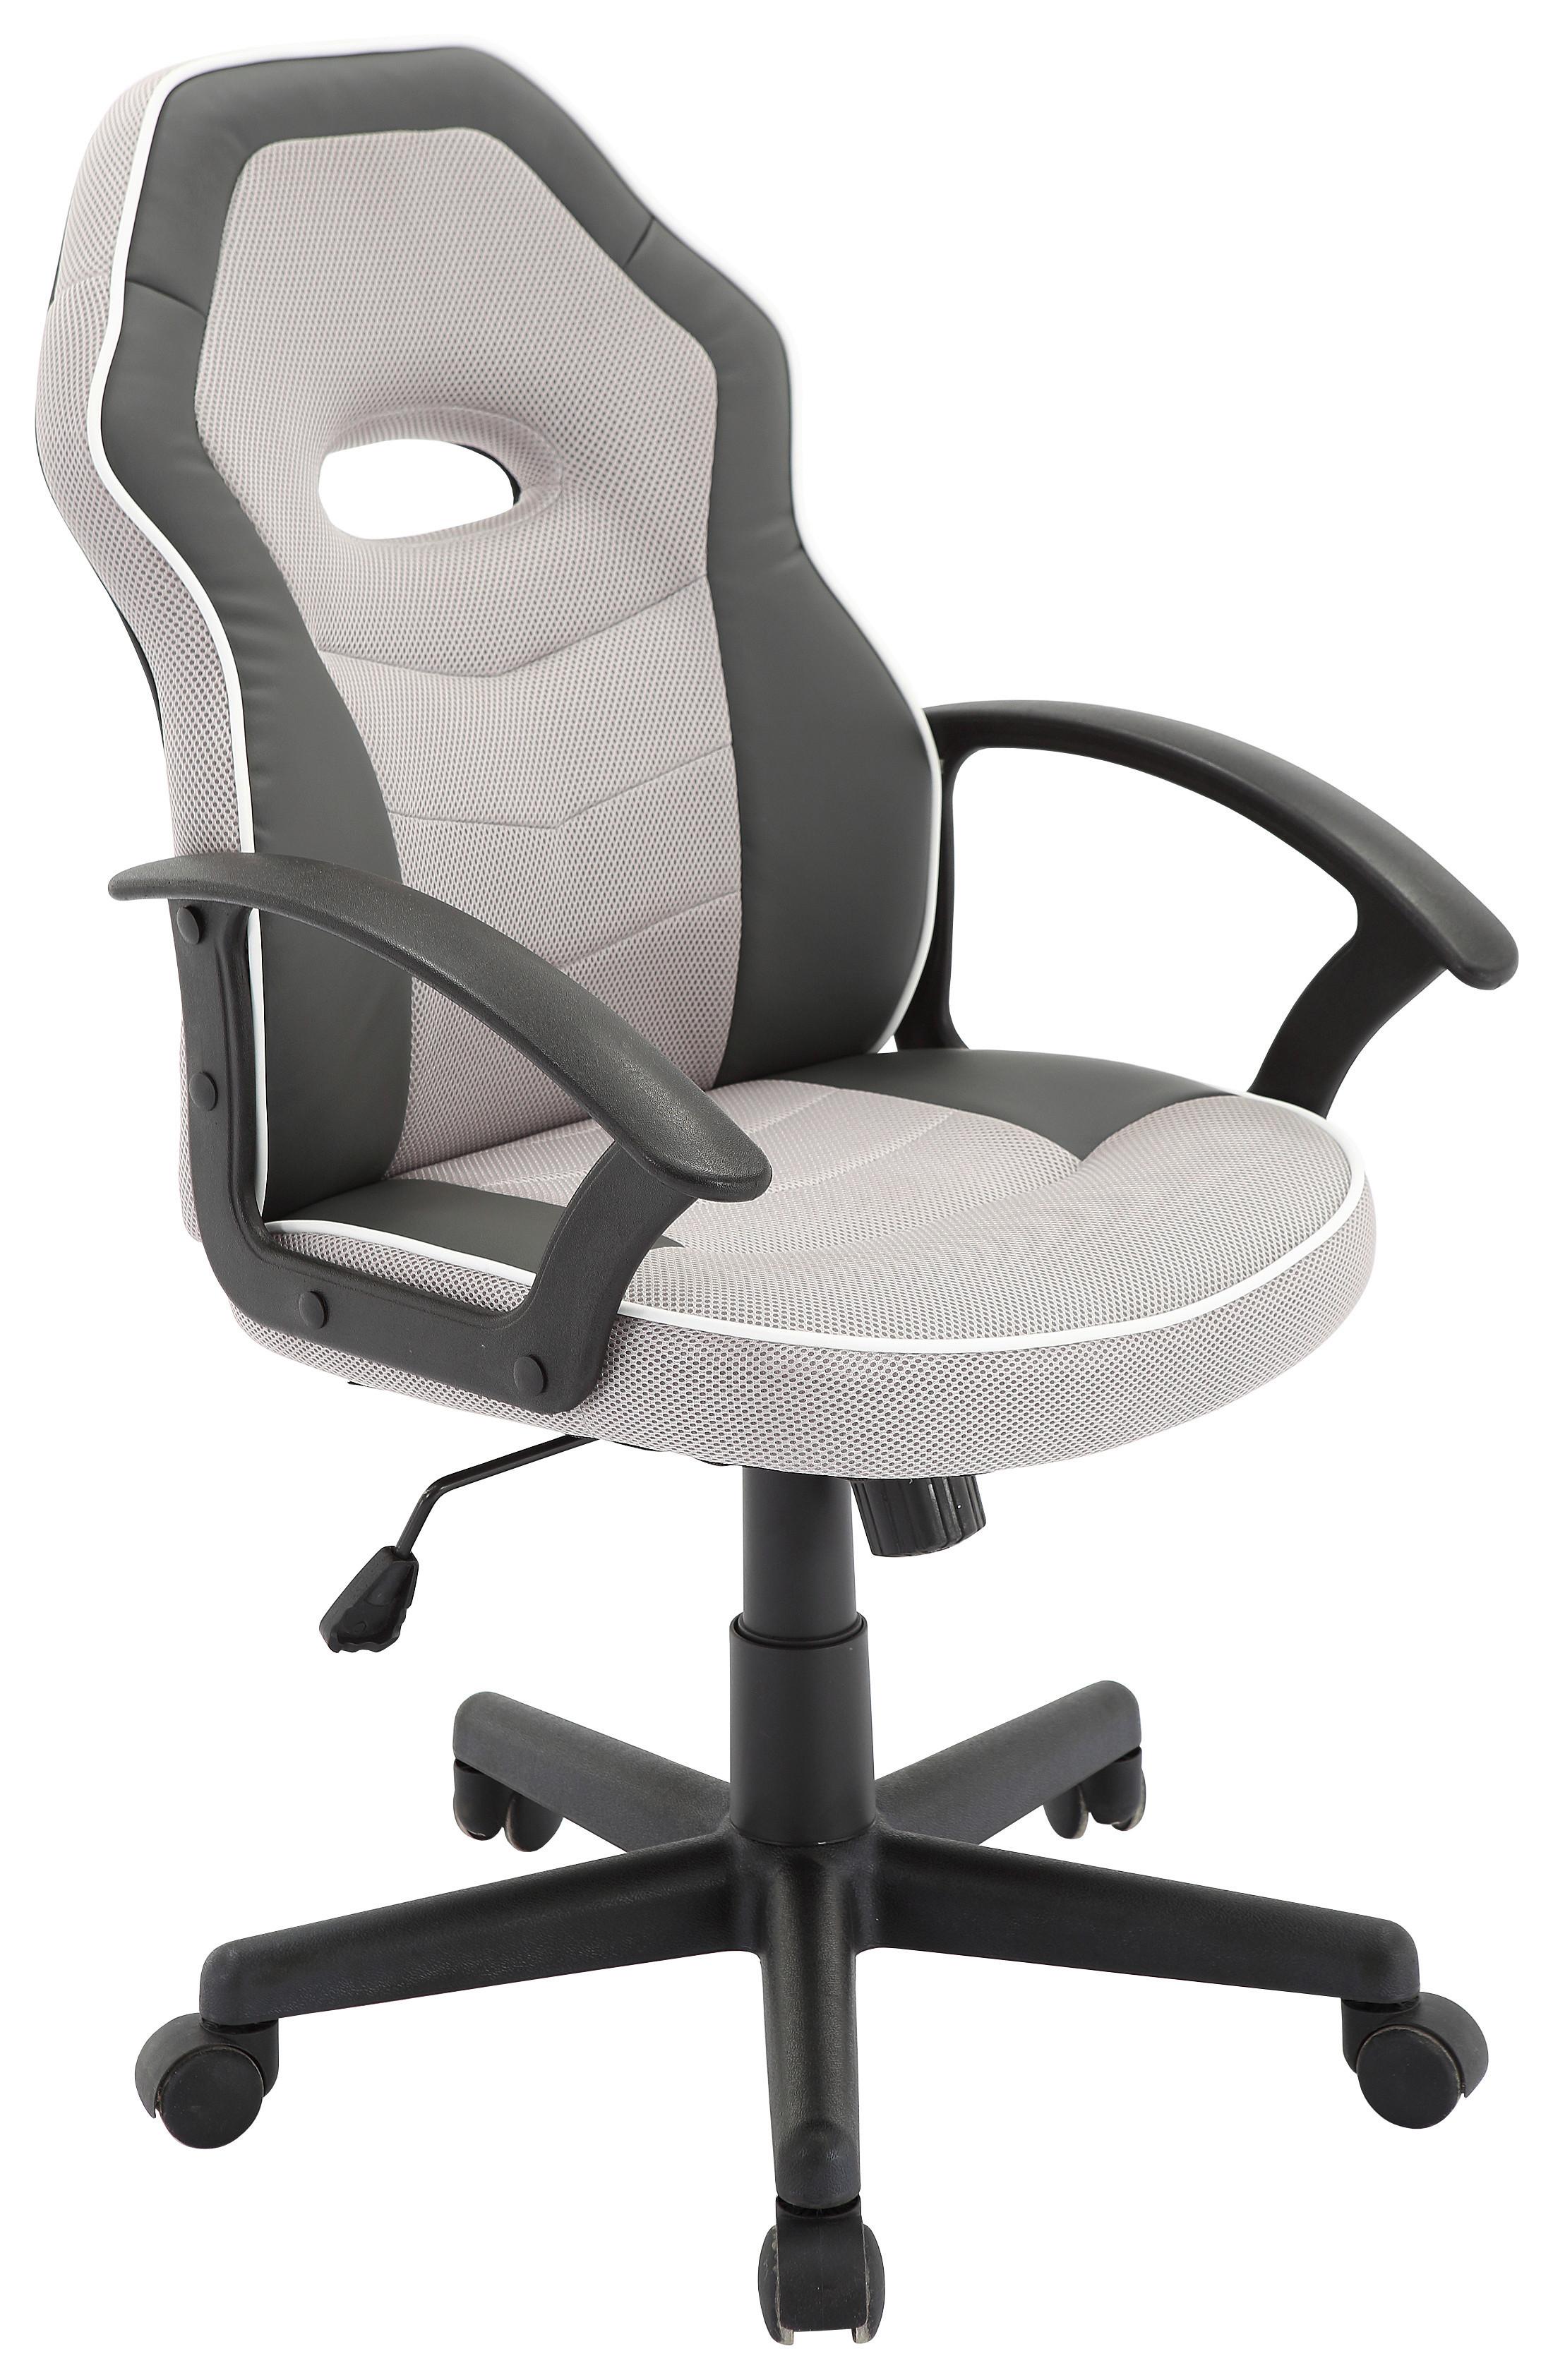 Otočná Židle Rico - šedá/bílá, Moderní, kov/textil (56,5/95-105/61cm) - Modern Living